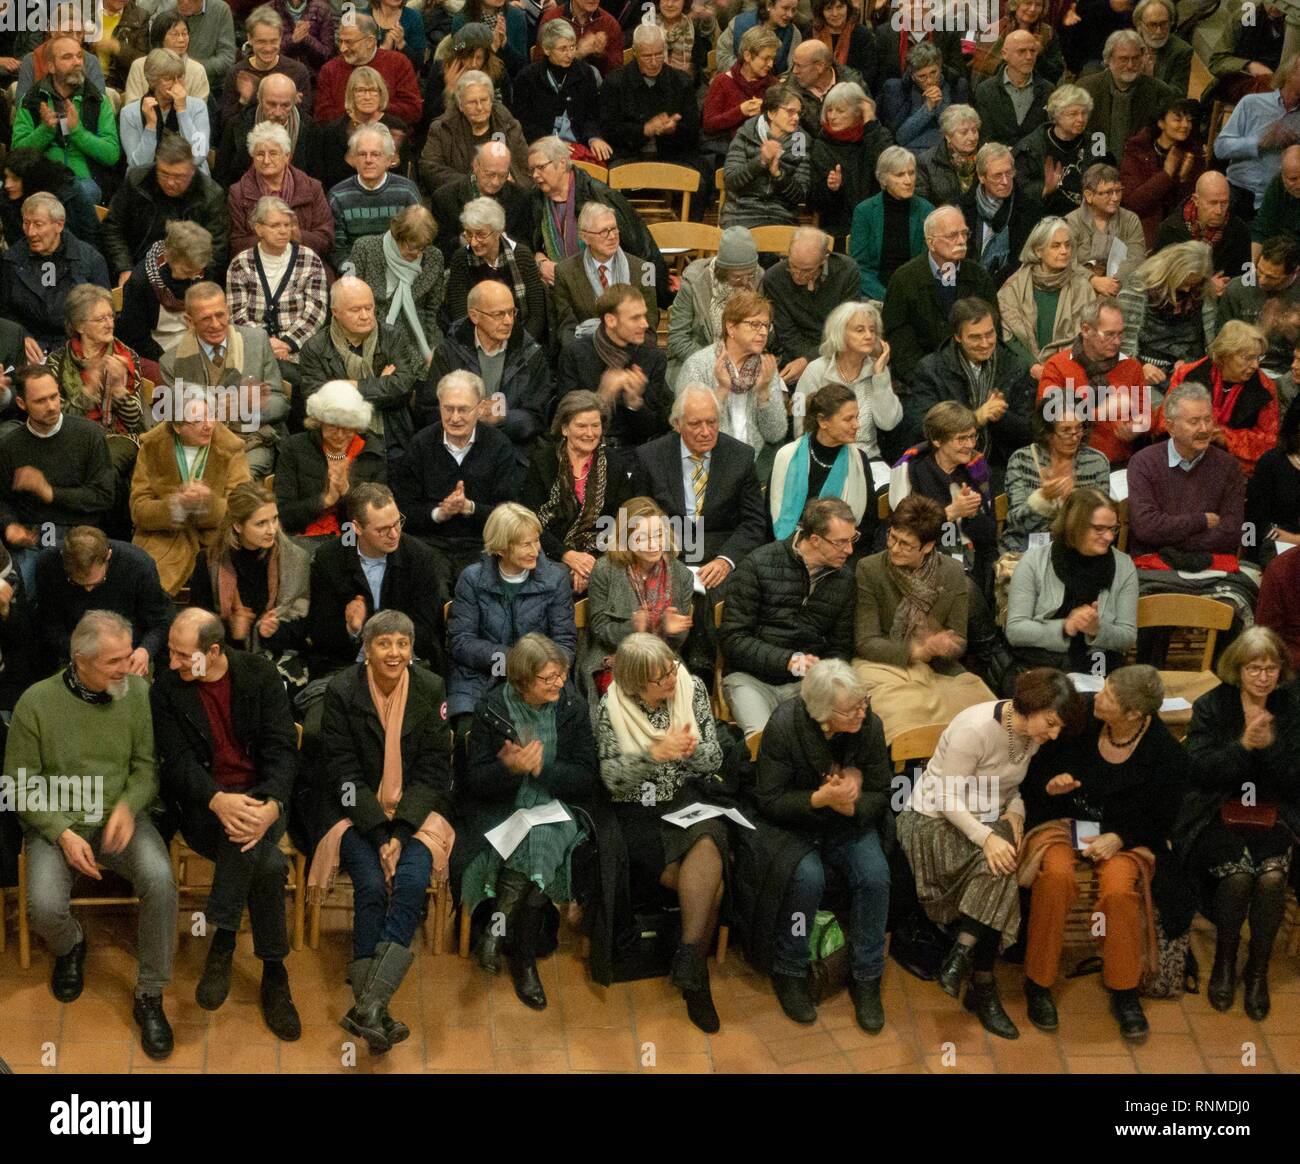 Publikum applaudiert, Evangelisch-lutherische Pfarrkirche St. Johannes, München, Bayern, Deutschland Stockfoto